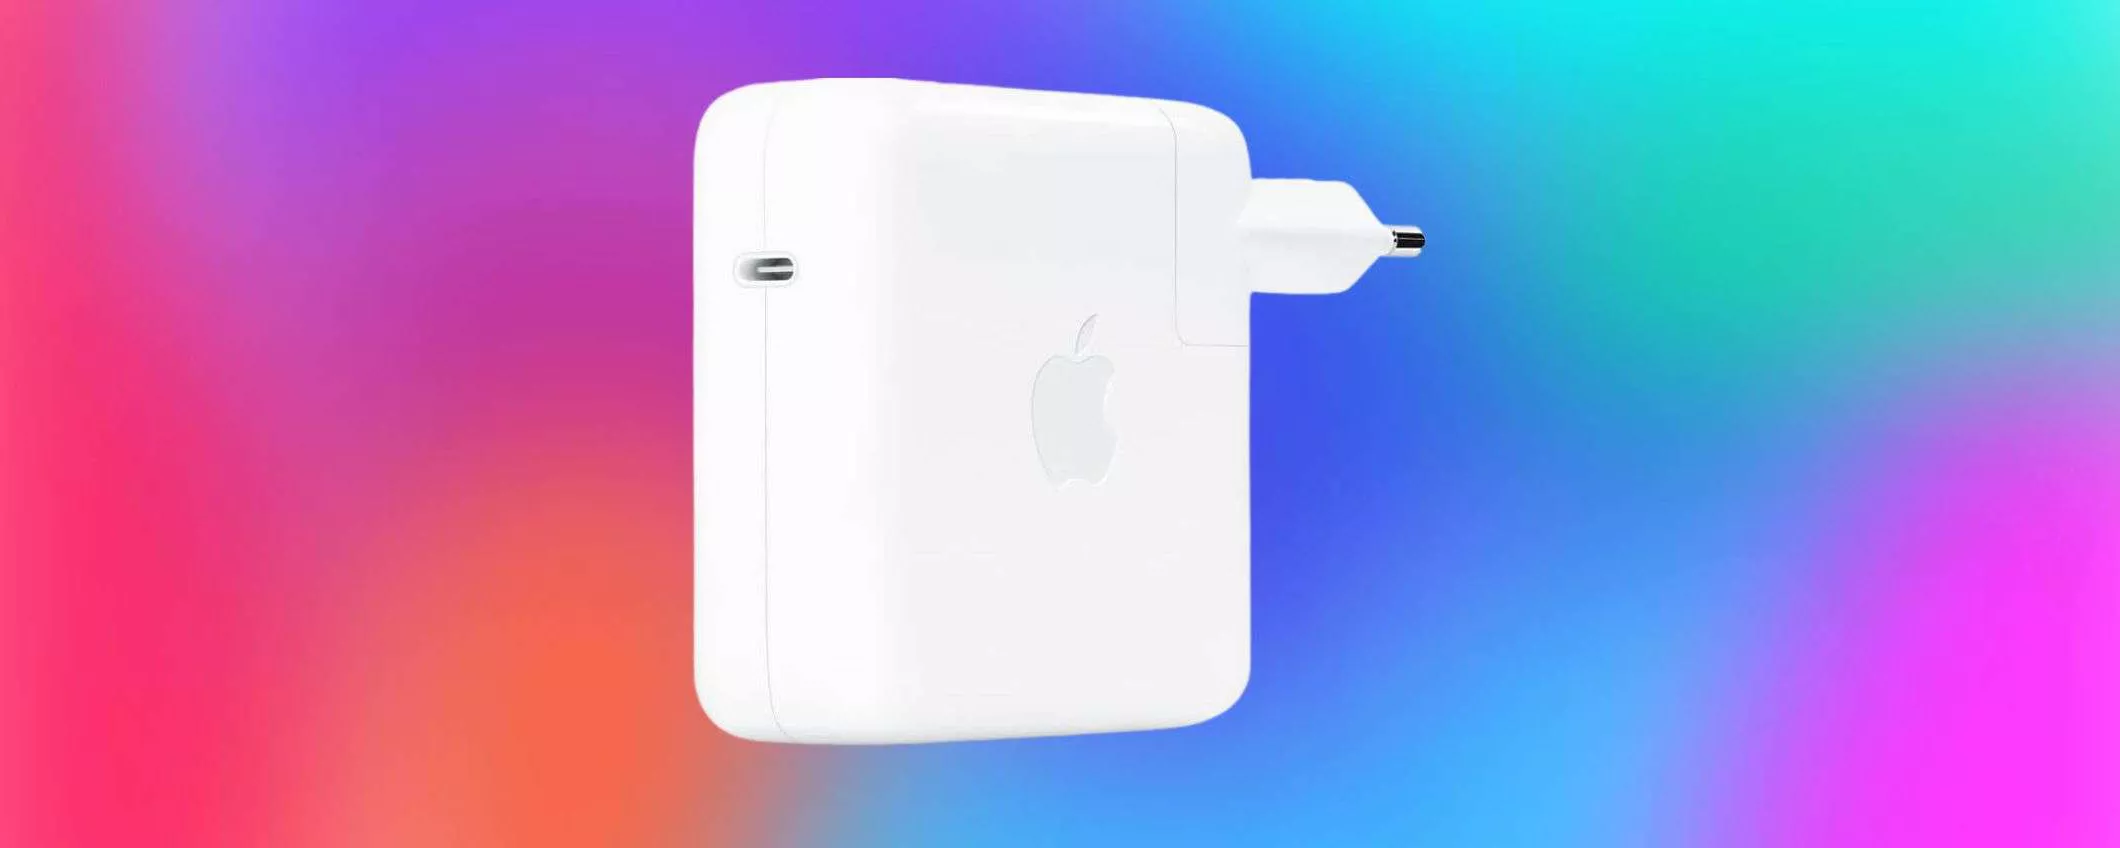 Alimentatore Apple USB-C originale: il prezzo CROLLA su Amazon (-32%)